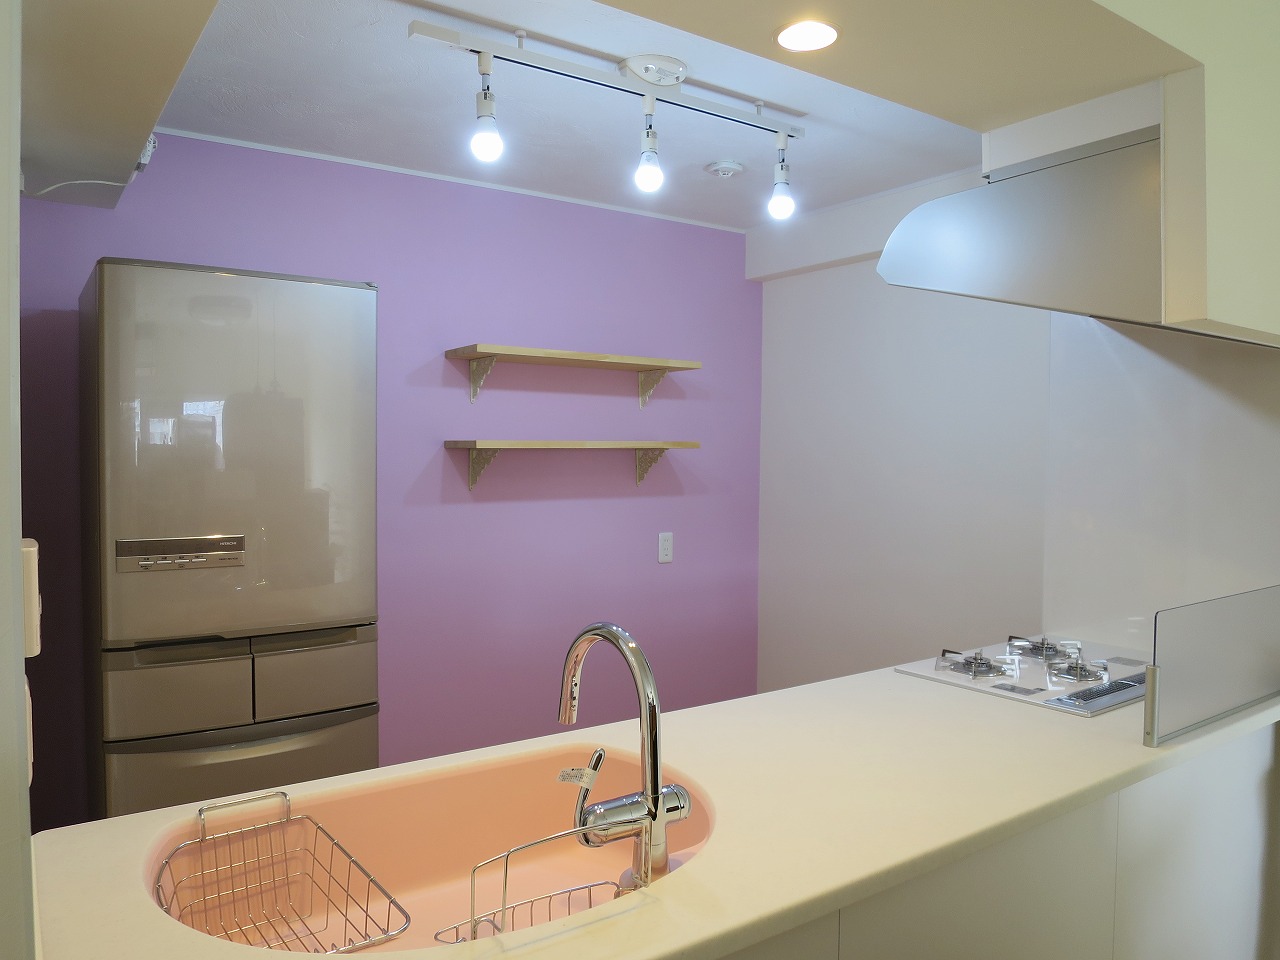 本日の完了検査 ピンクをテーマカラーにしたキッチン空間 I003 Okuta リフォーム マンションリフォームならlohas Studio ロハススタジオ Presented By Okuta オクタ